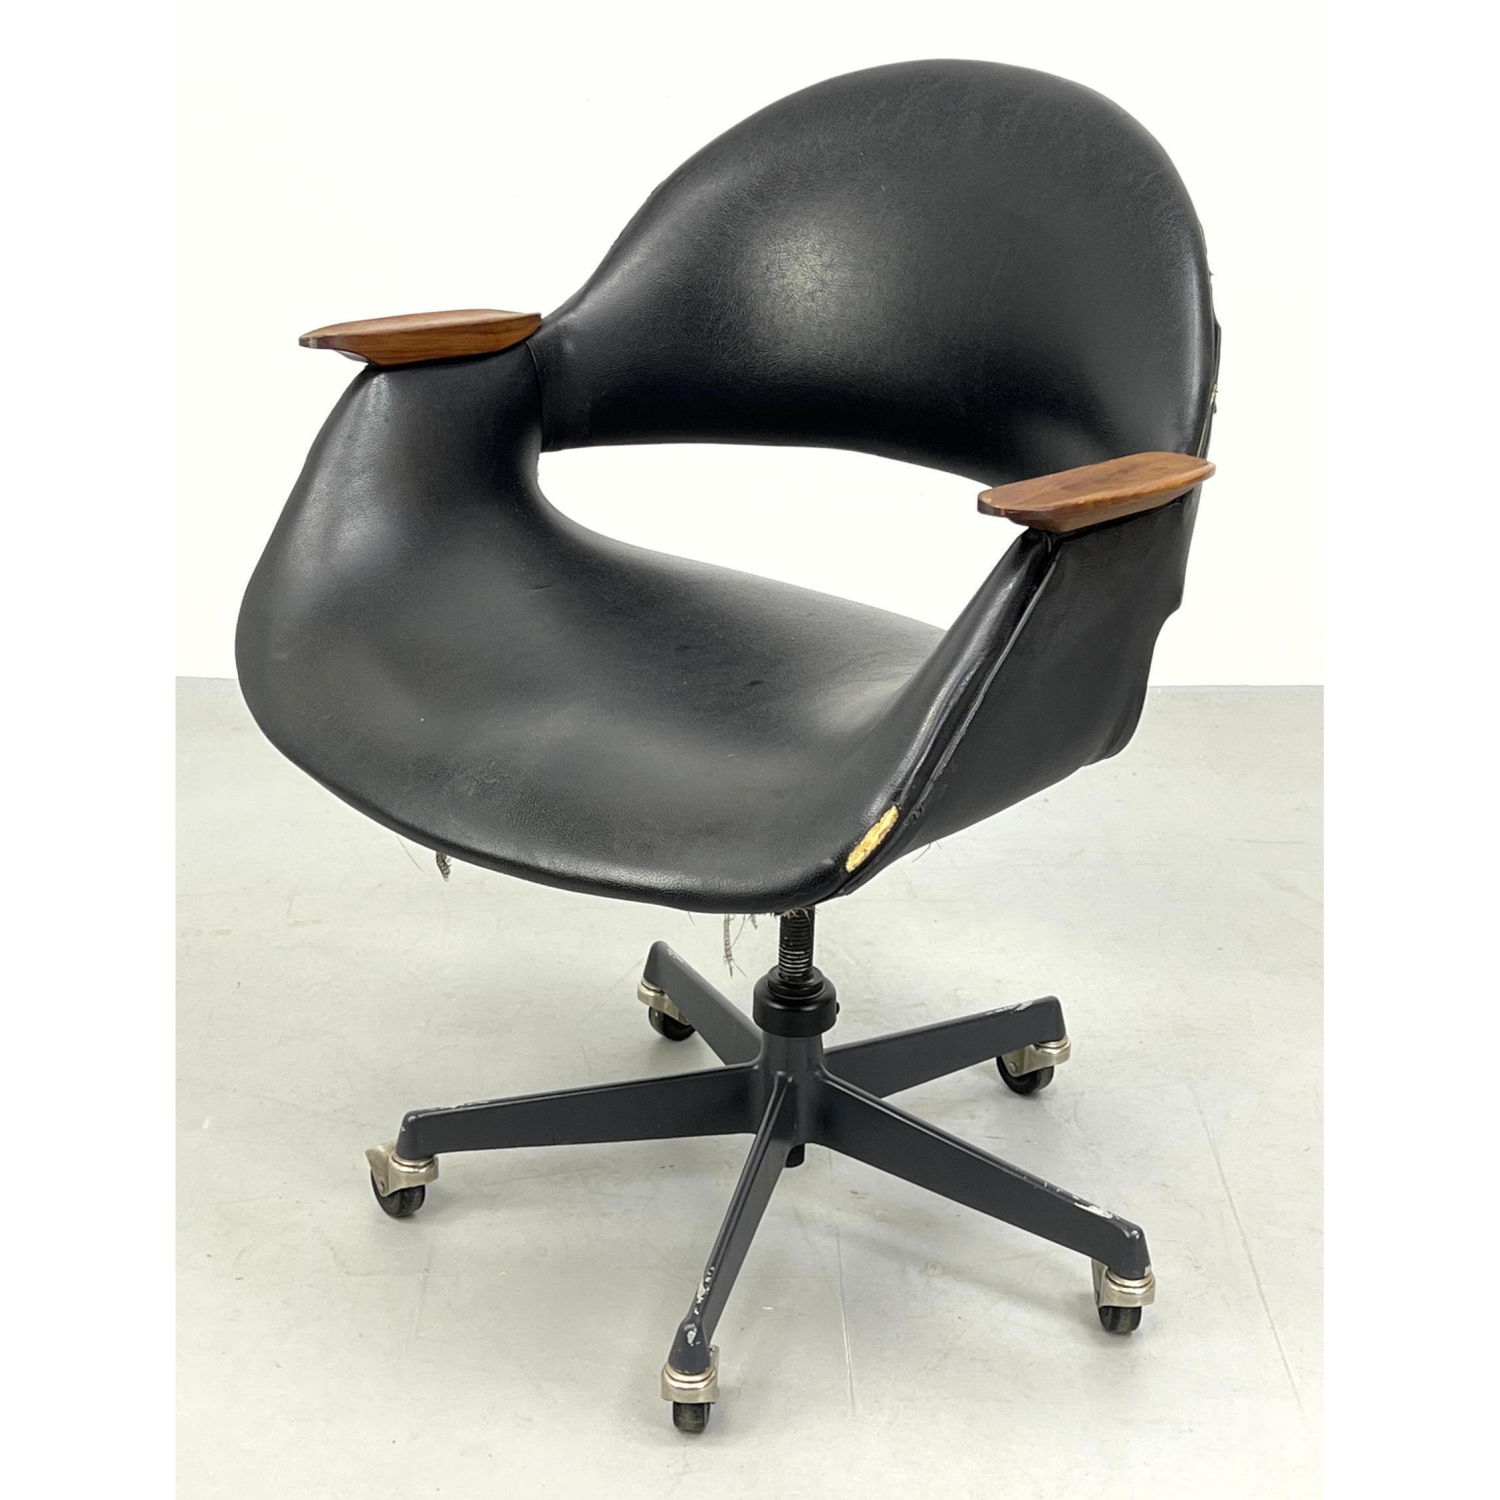 Finn Juhl Style Desk Chair. Teak